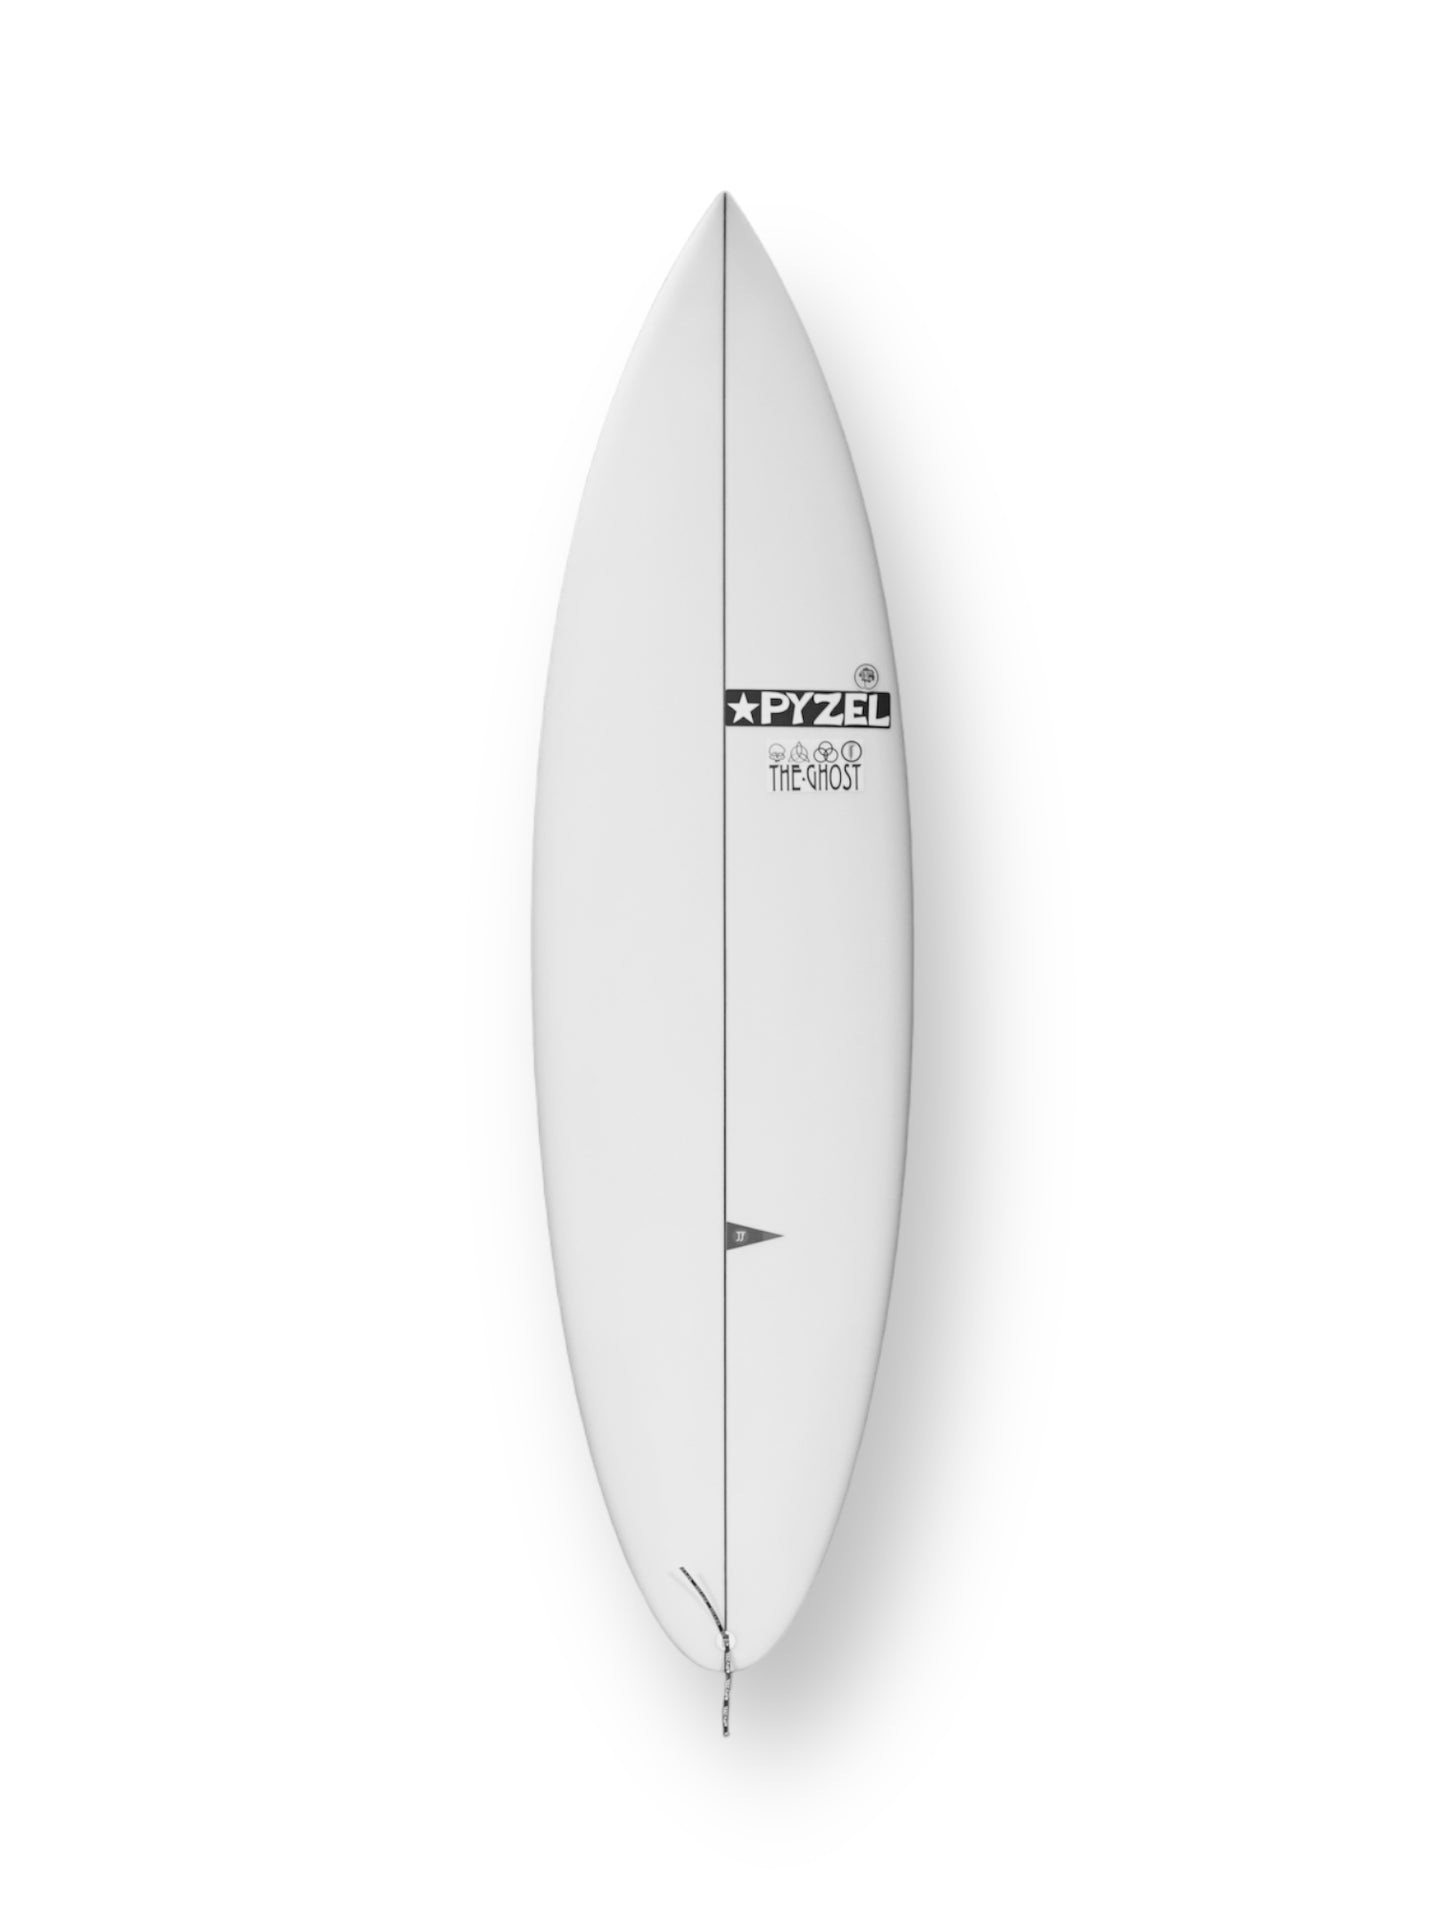 PYZEL GHOST 6'2" SURFBOARD